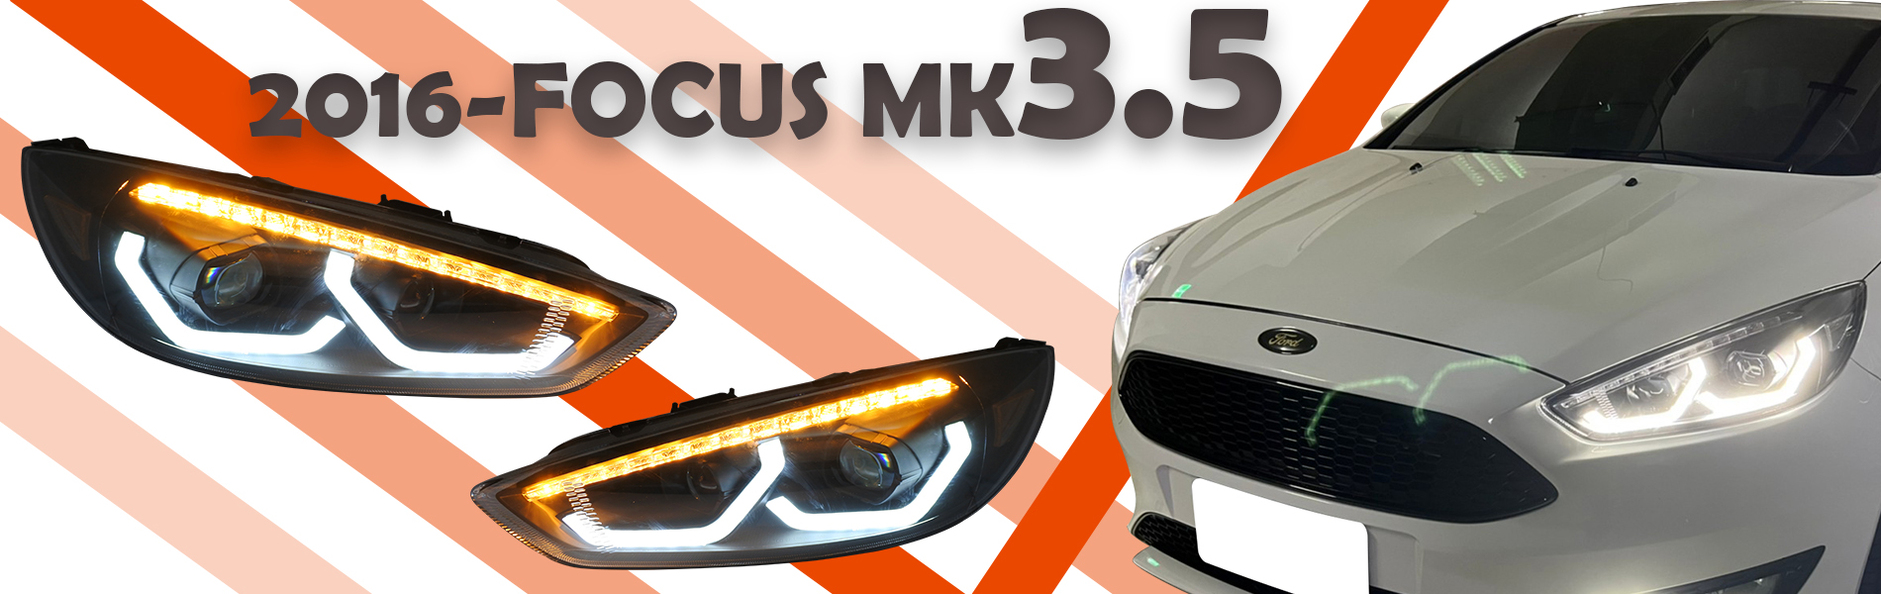 2016-2018 FOCUS MK3.5 U型光柱 黑框魚眼大燈 序列式方向燈